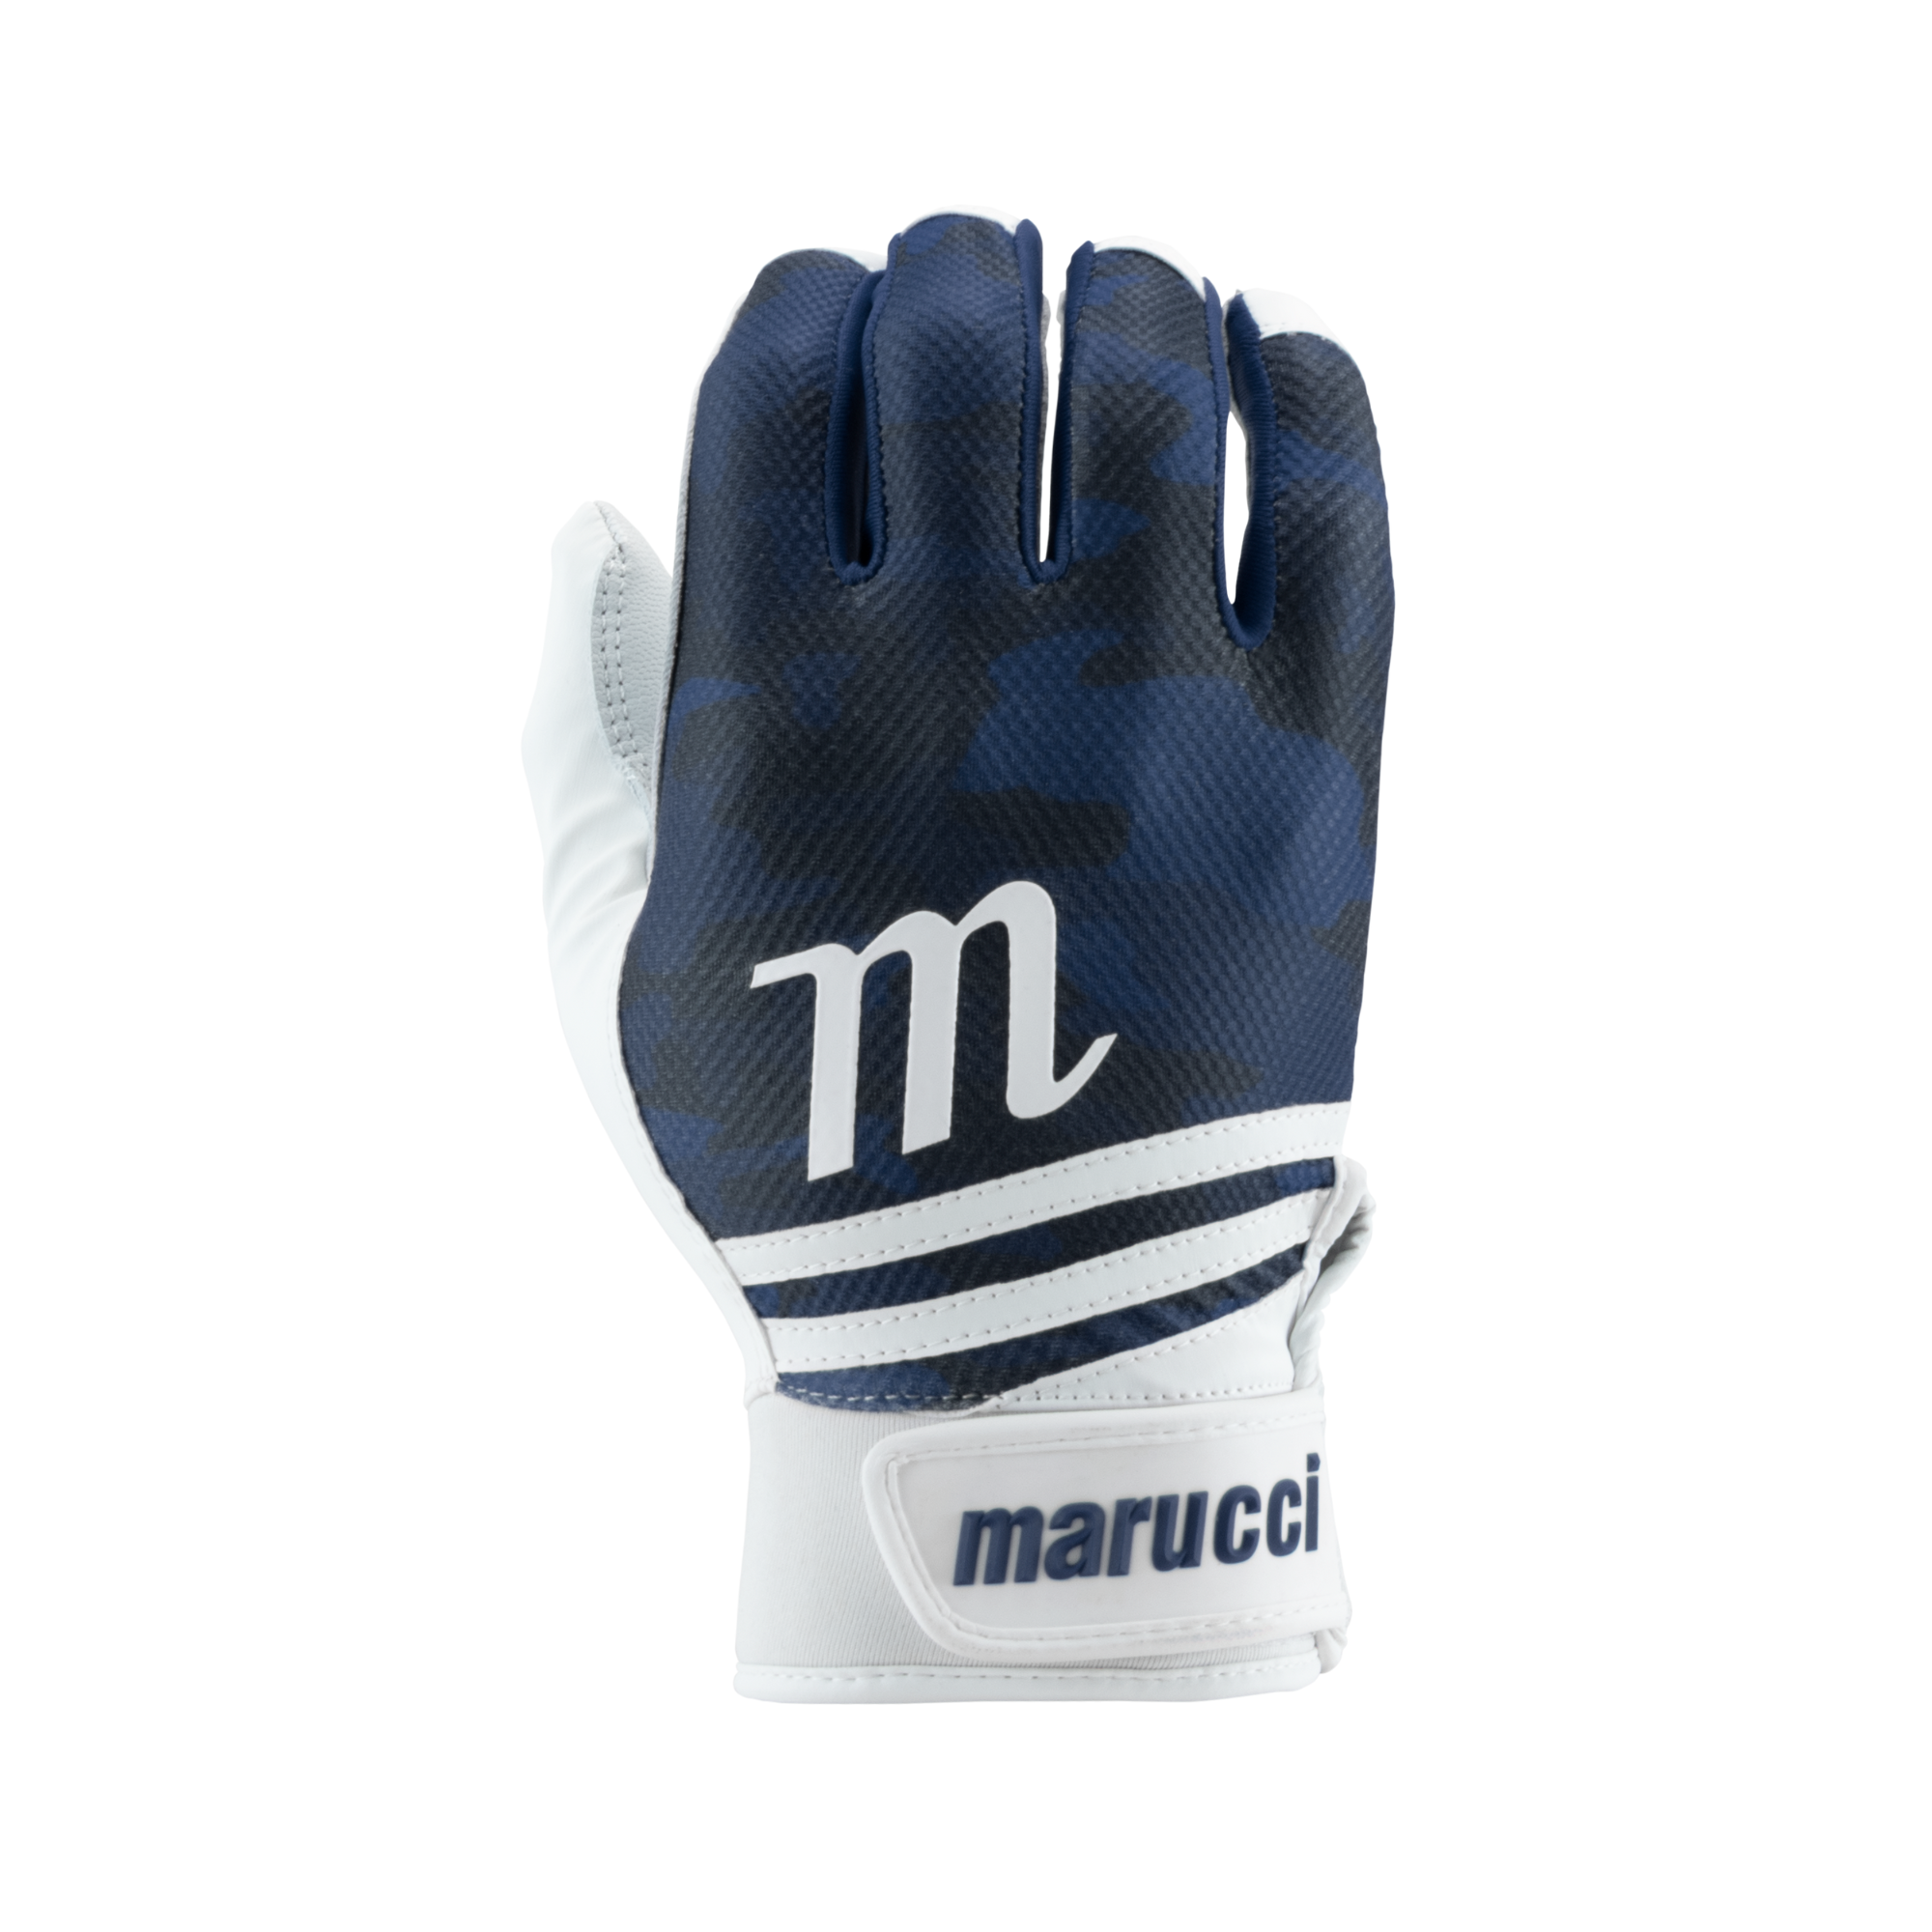 Marucci Crux Batting Gloves - Navy